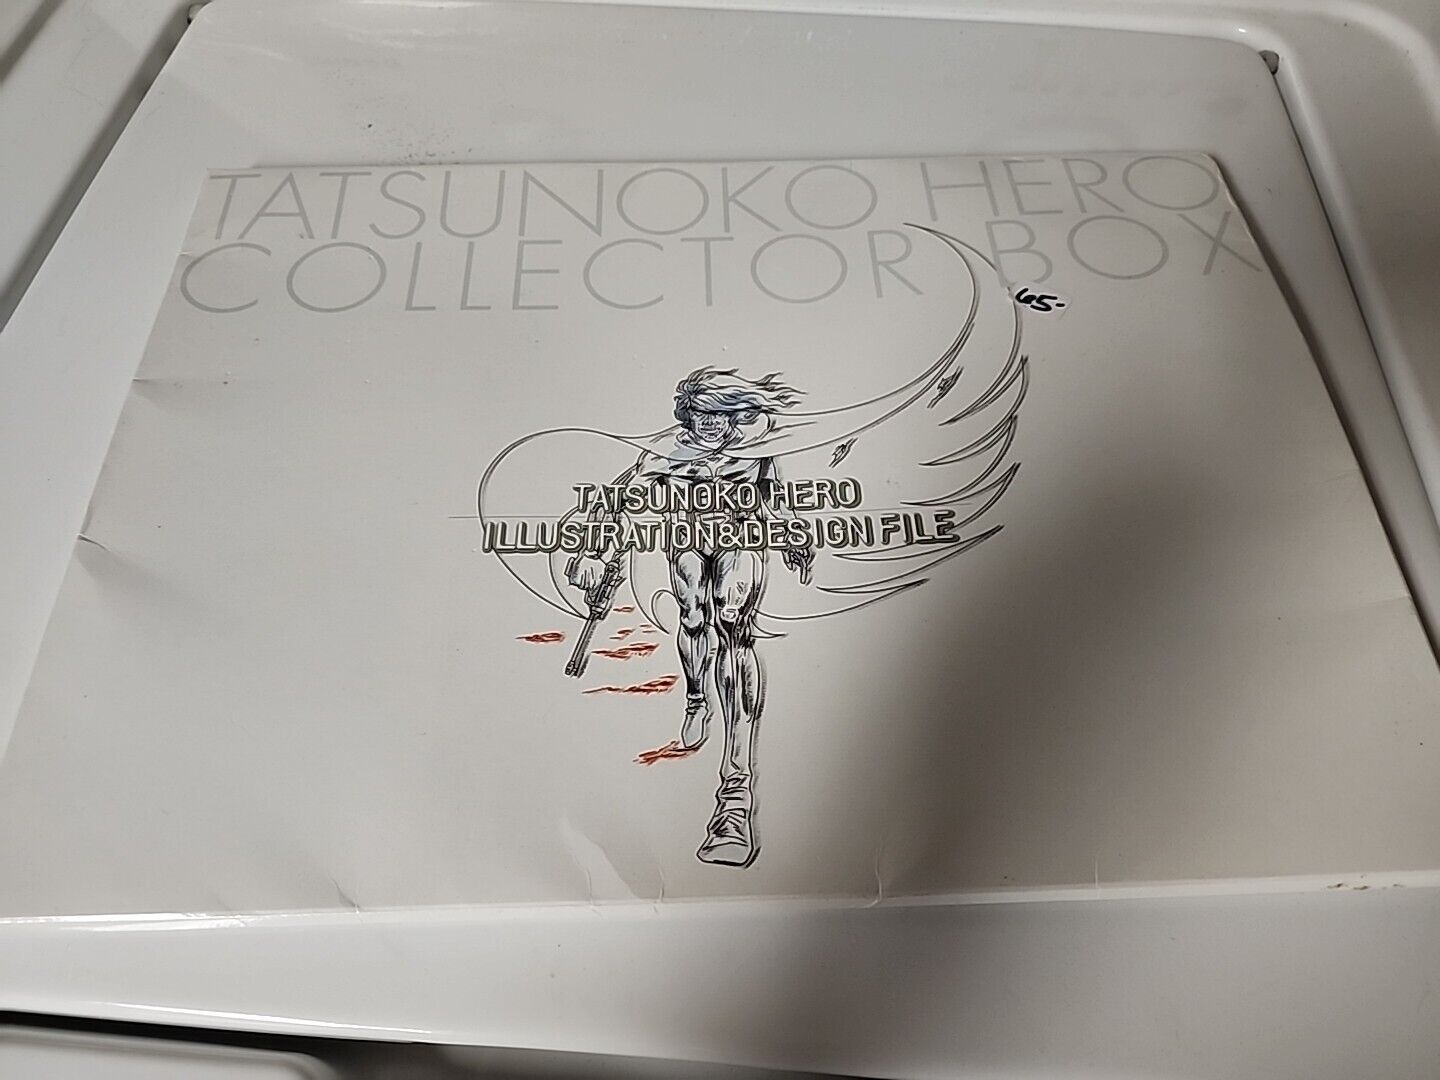 TATSUNOKO HERO COLLECTOR BOX Incomplete Art See Description